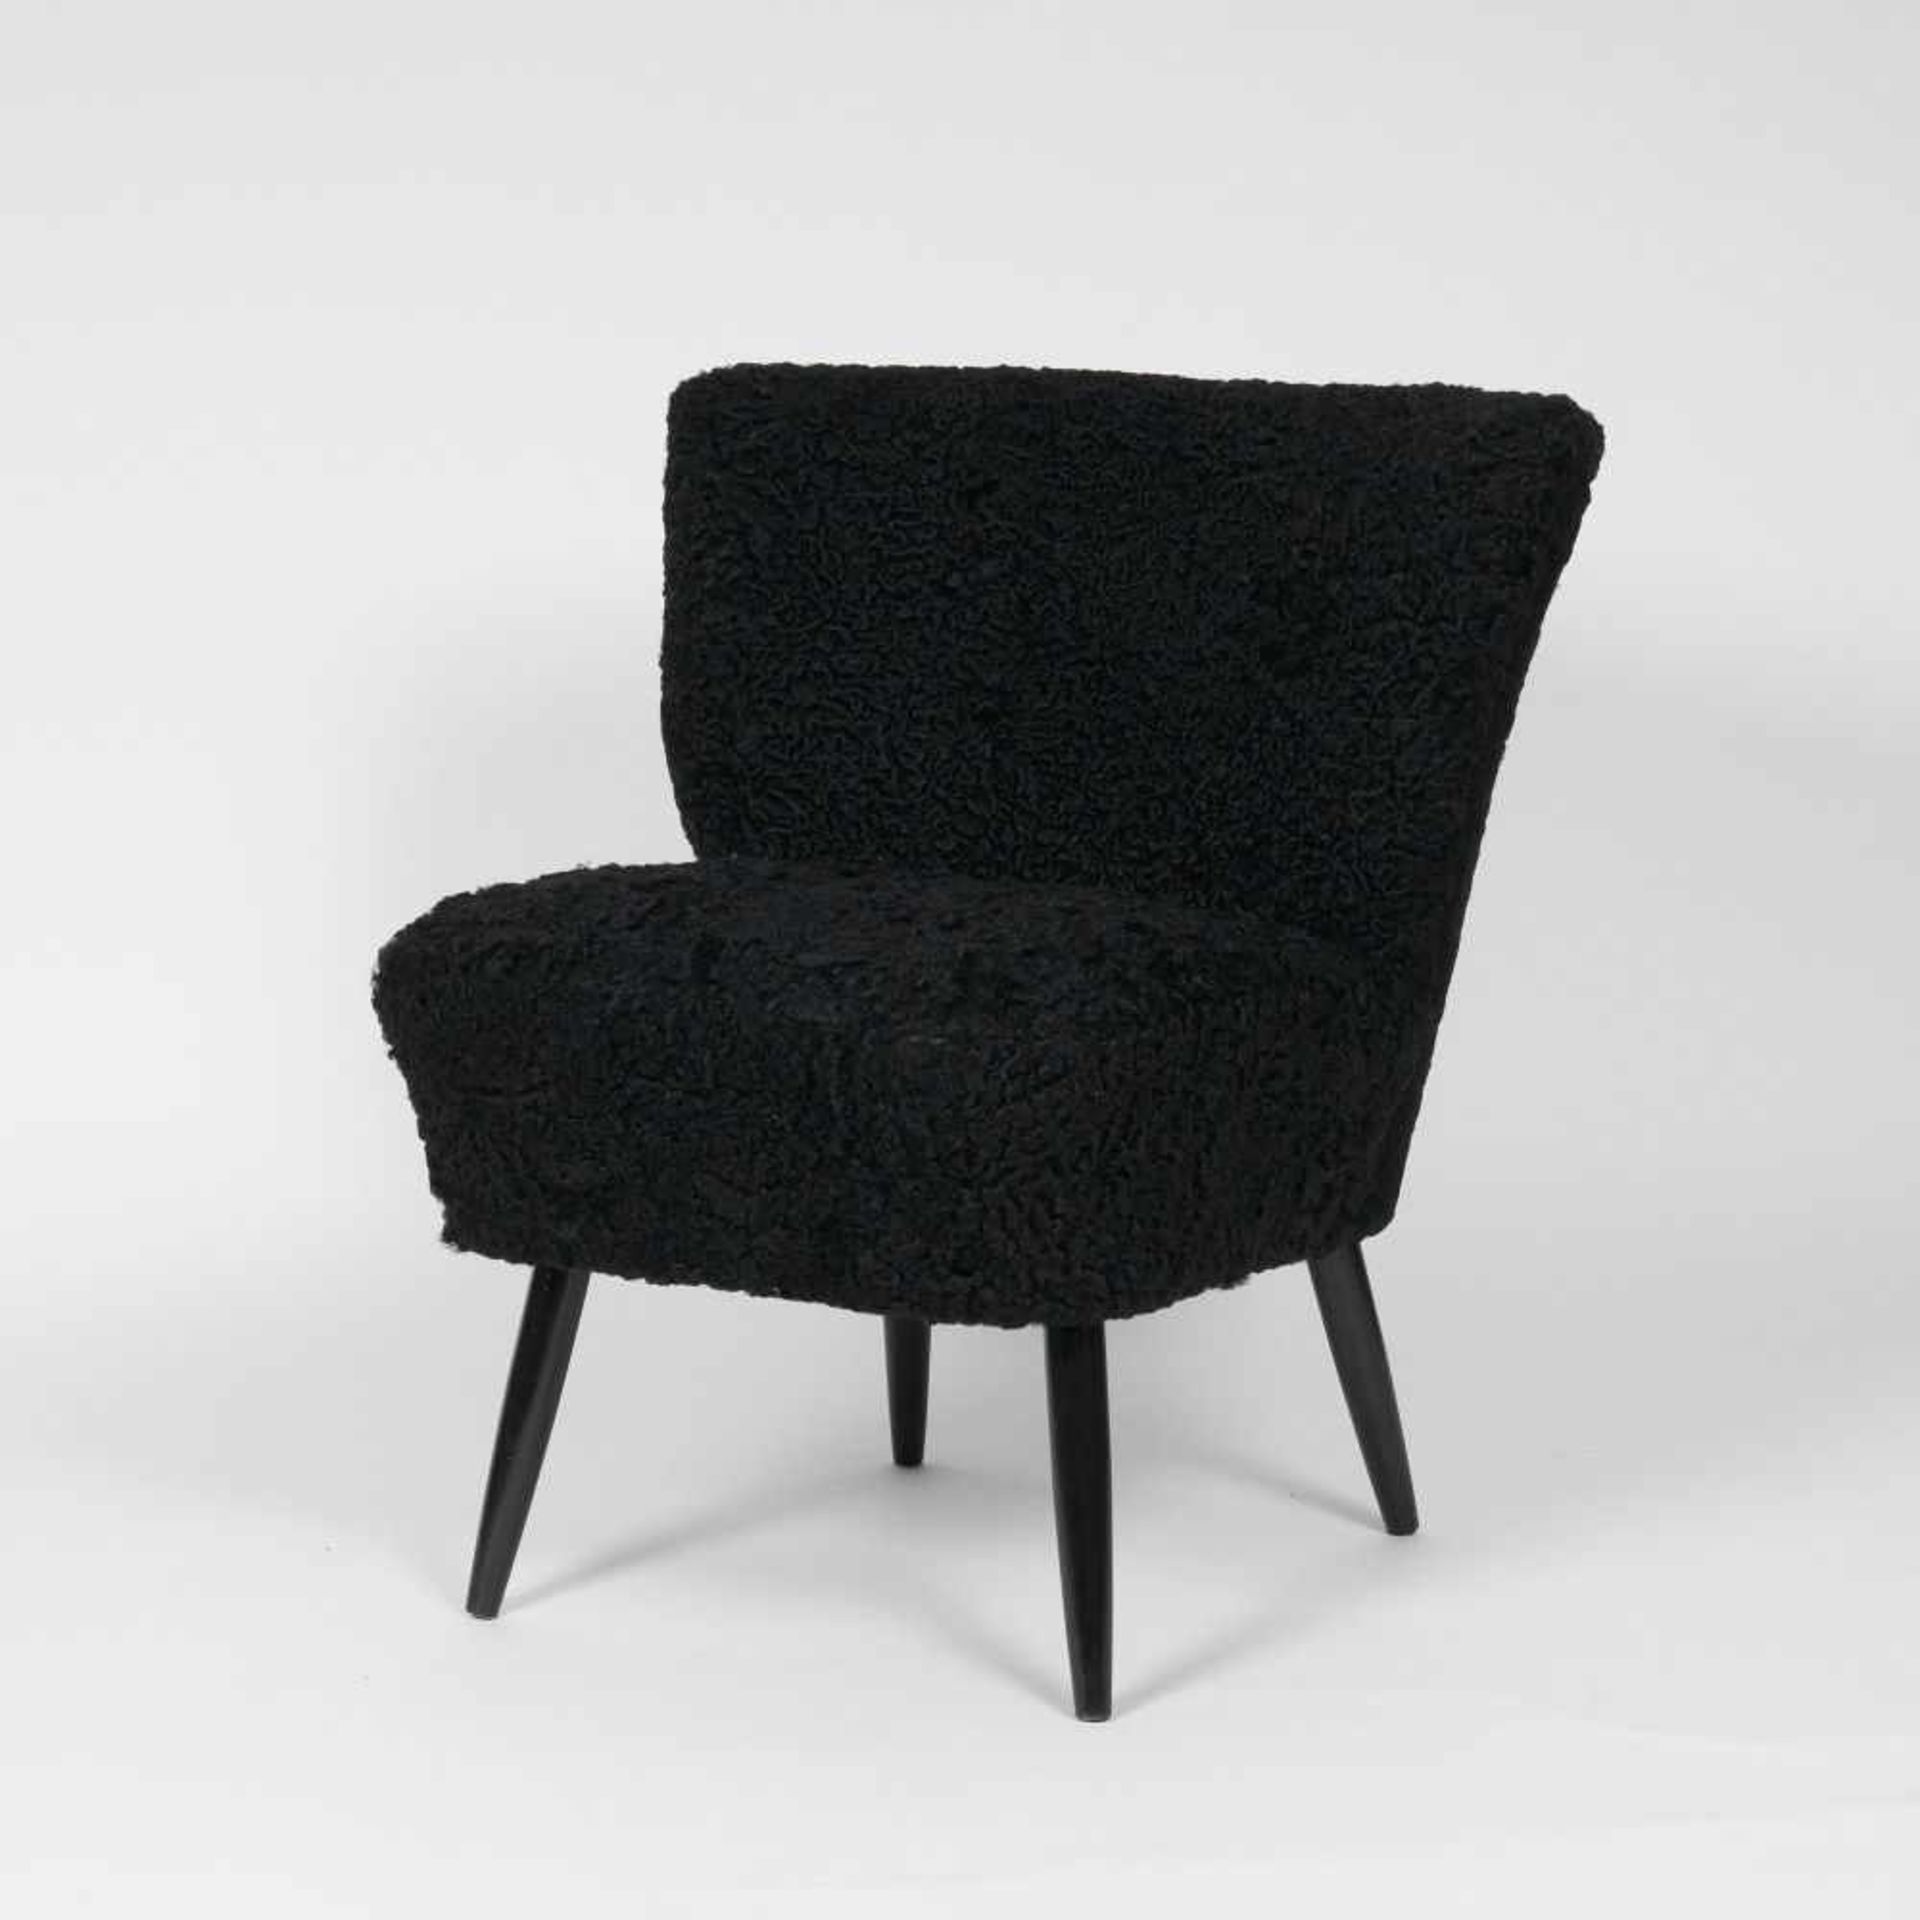 Mid-Century Sessel mit Persianer-Bezug1960er Jahre. Schwarzlack-Beine. H. 72 cm, B. 50 cm, Sitztiefe